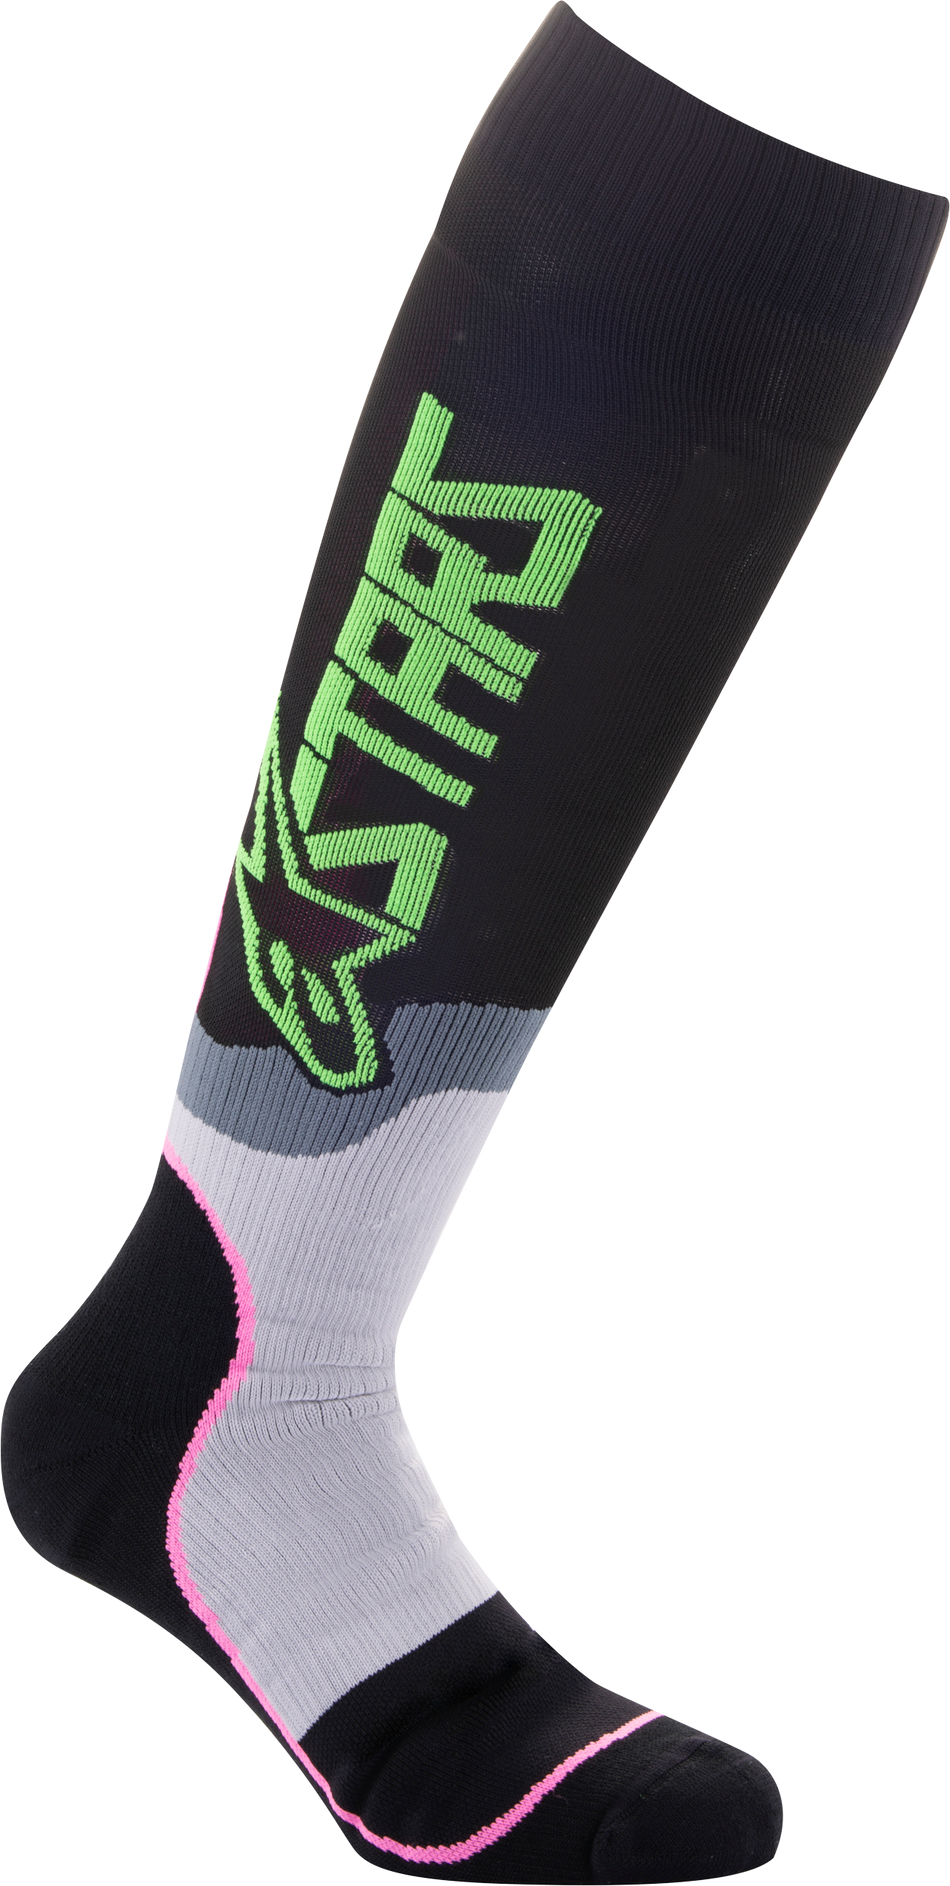 ALPINESTARS Mx Plus-2 Socks Black/Green Neon/Pink Fluo Md 4701920-1669-M